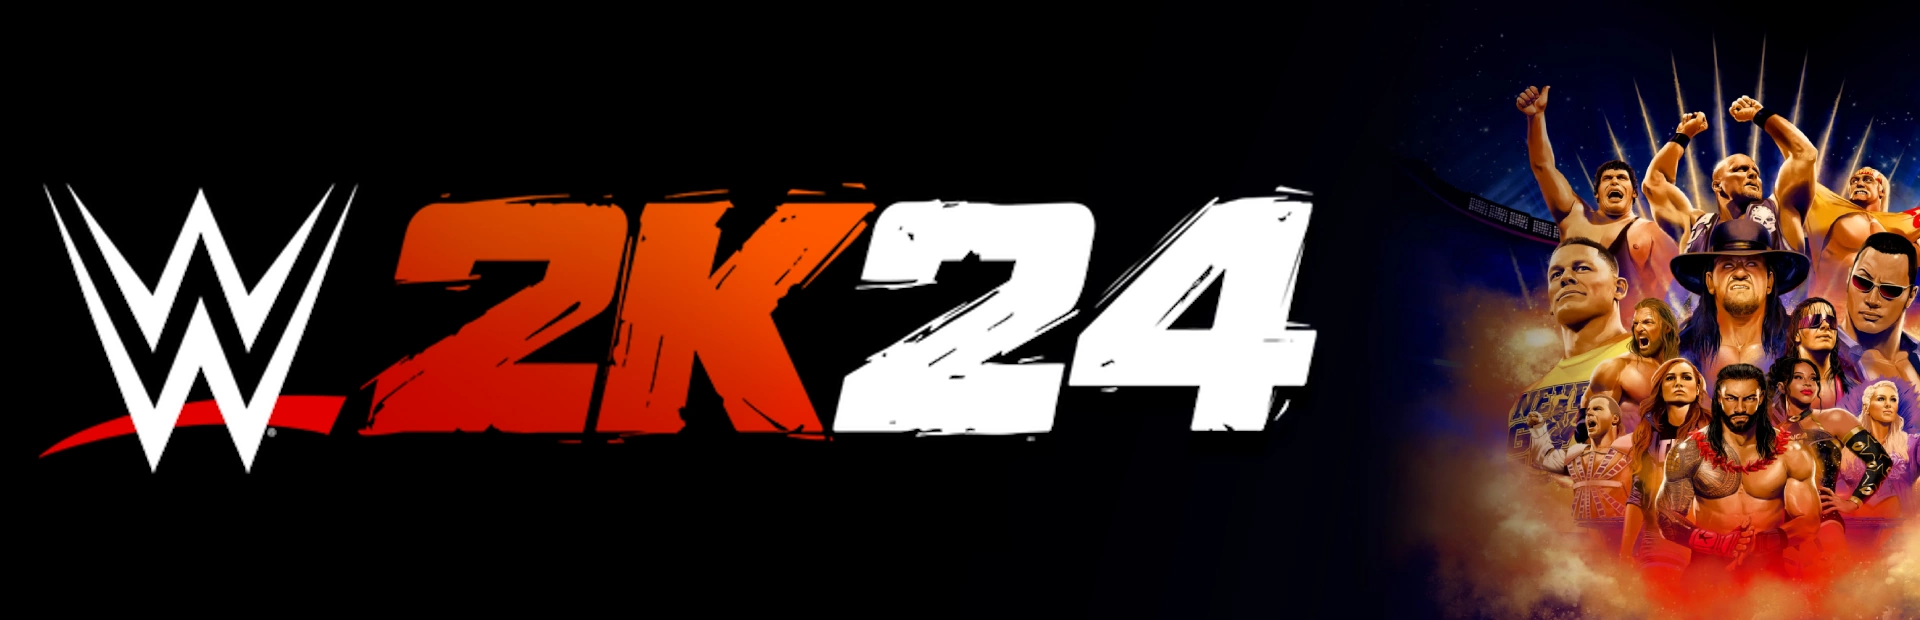 دانلود بازی WWE 2K24 برای کامپیوتر | گیمباتو